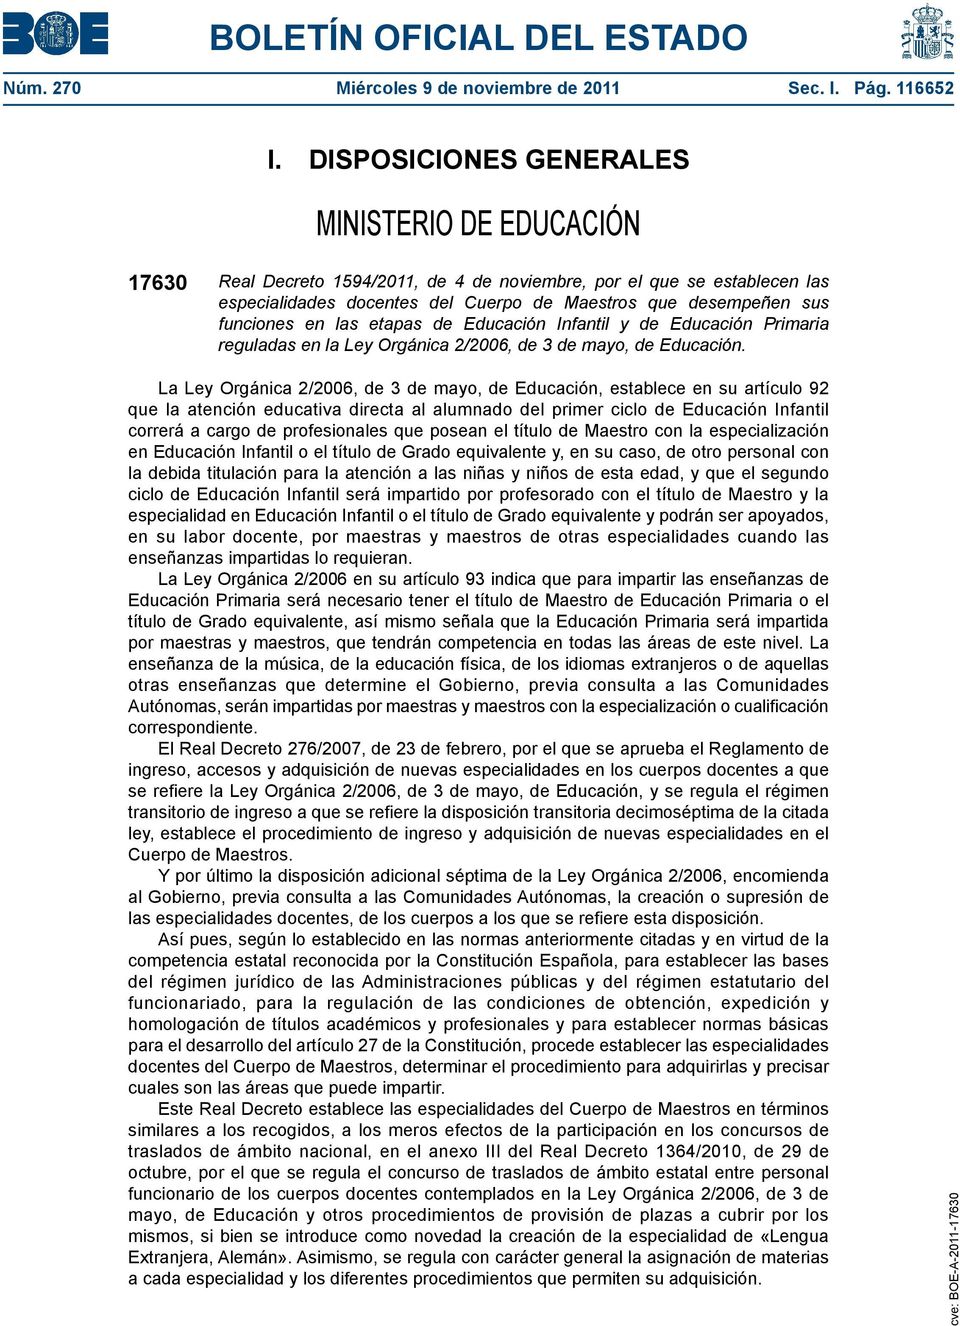 funciones en las etapas de Educación Infantil y de Educación Primaria reguladas en la Ley Orgánica 2/2006, de 3 de mayo, de Educación.